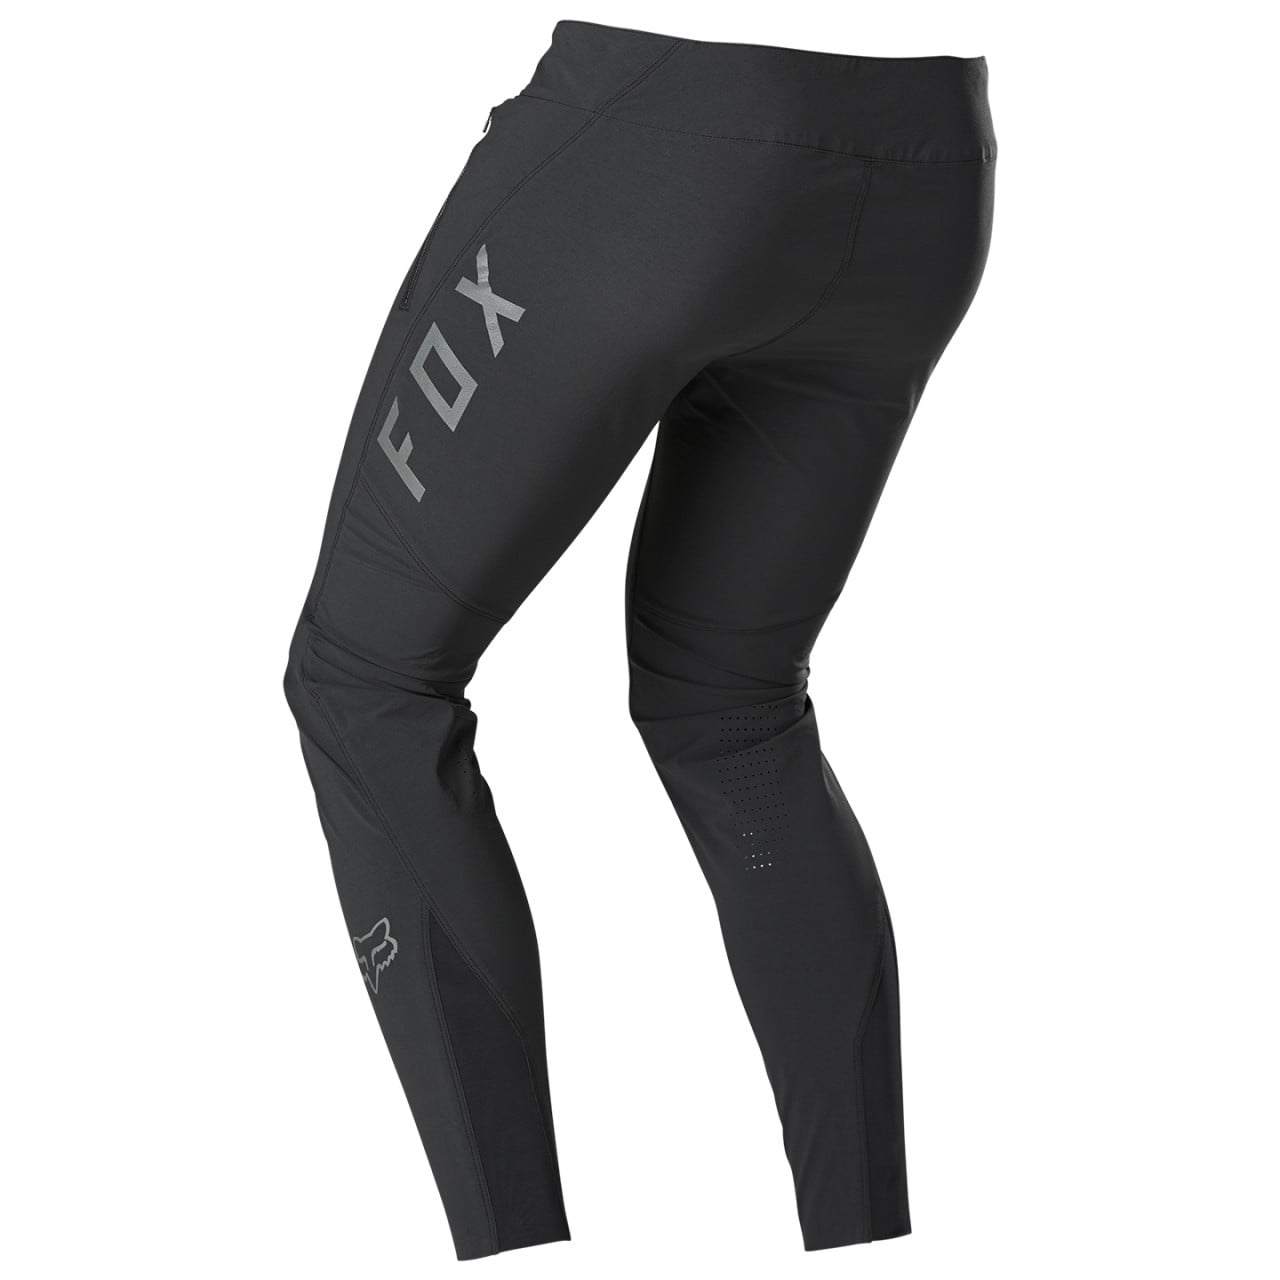 Pantalone bike lungo senza fondello Flexair